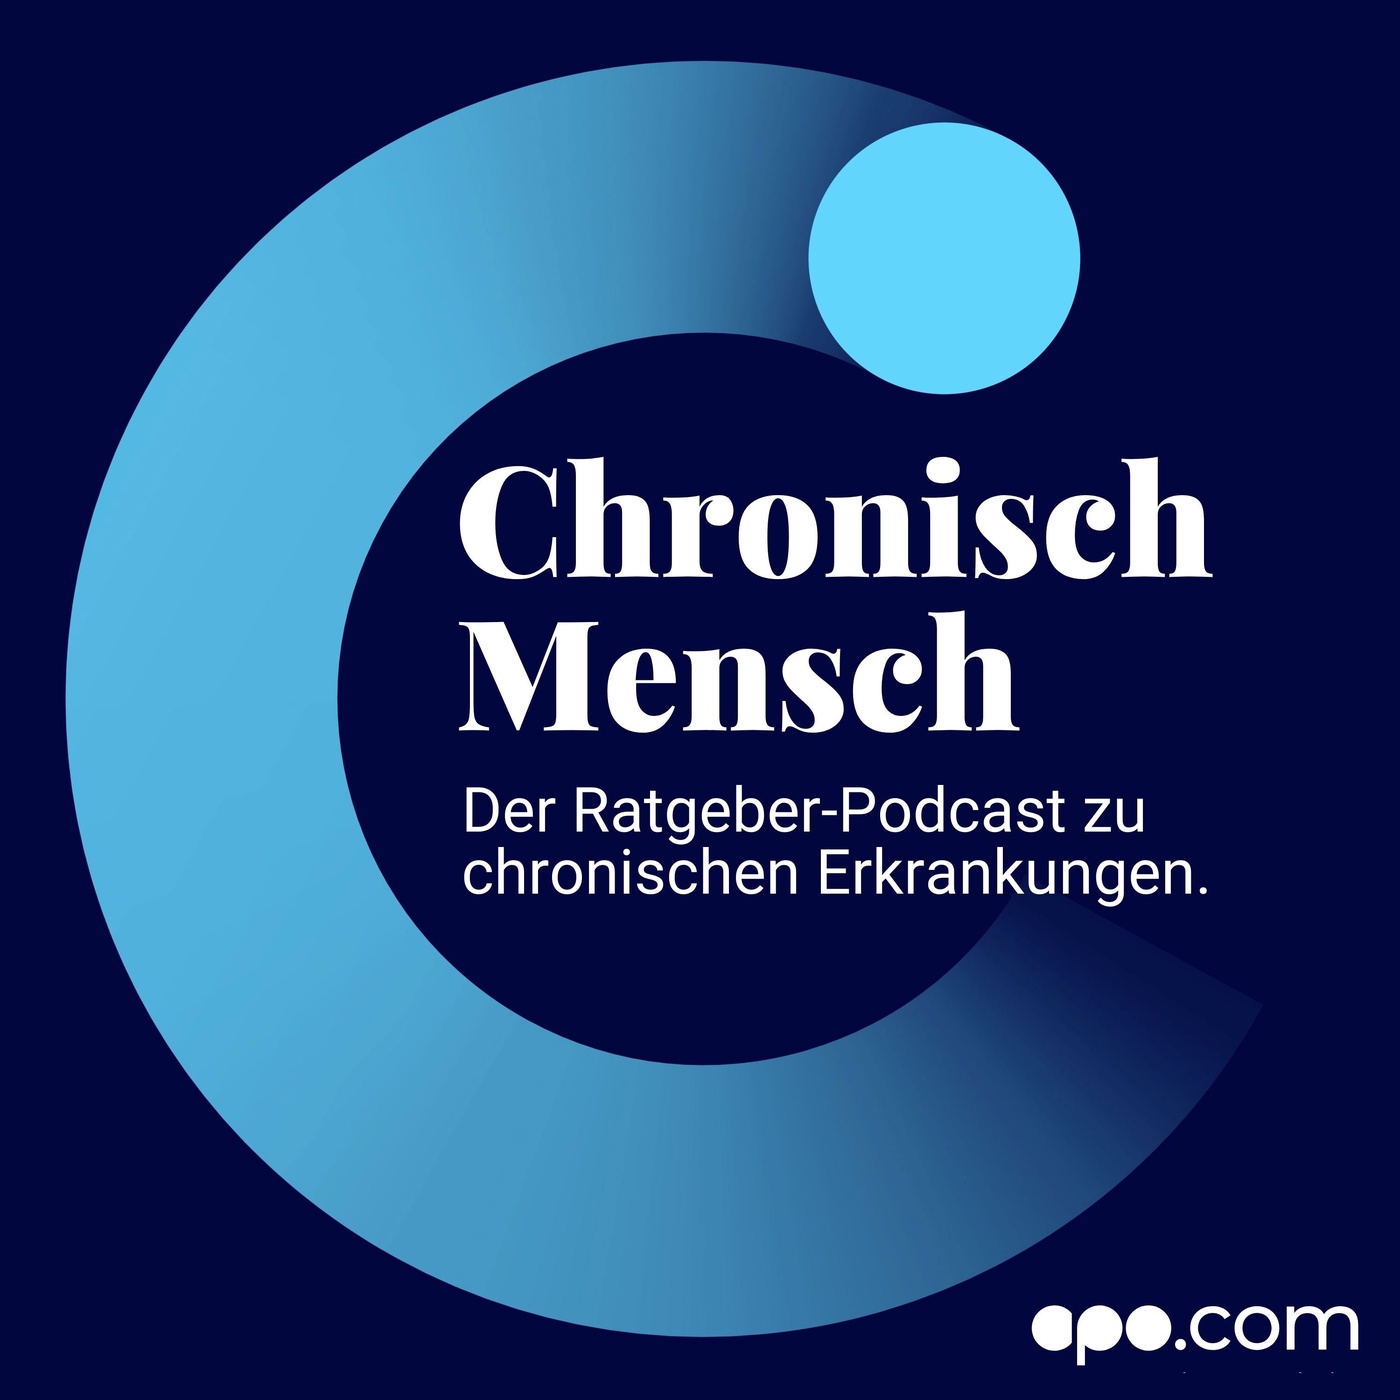 Chronisch Mensch | Der Ratgeber-Podcast zu chronischen Erkrankungen